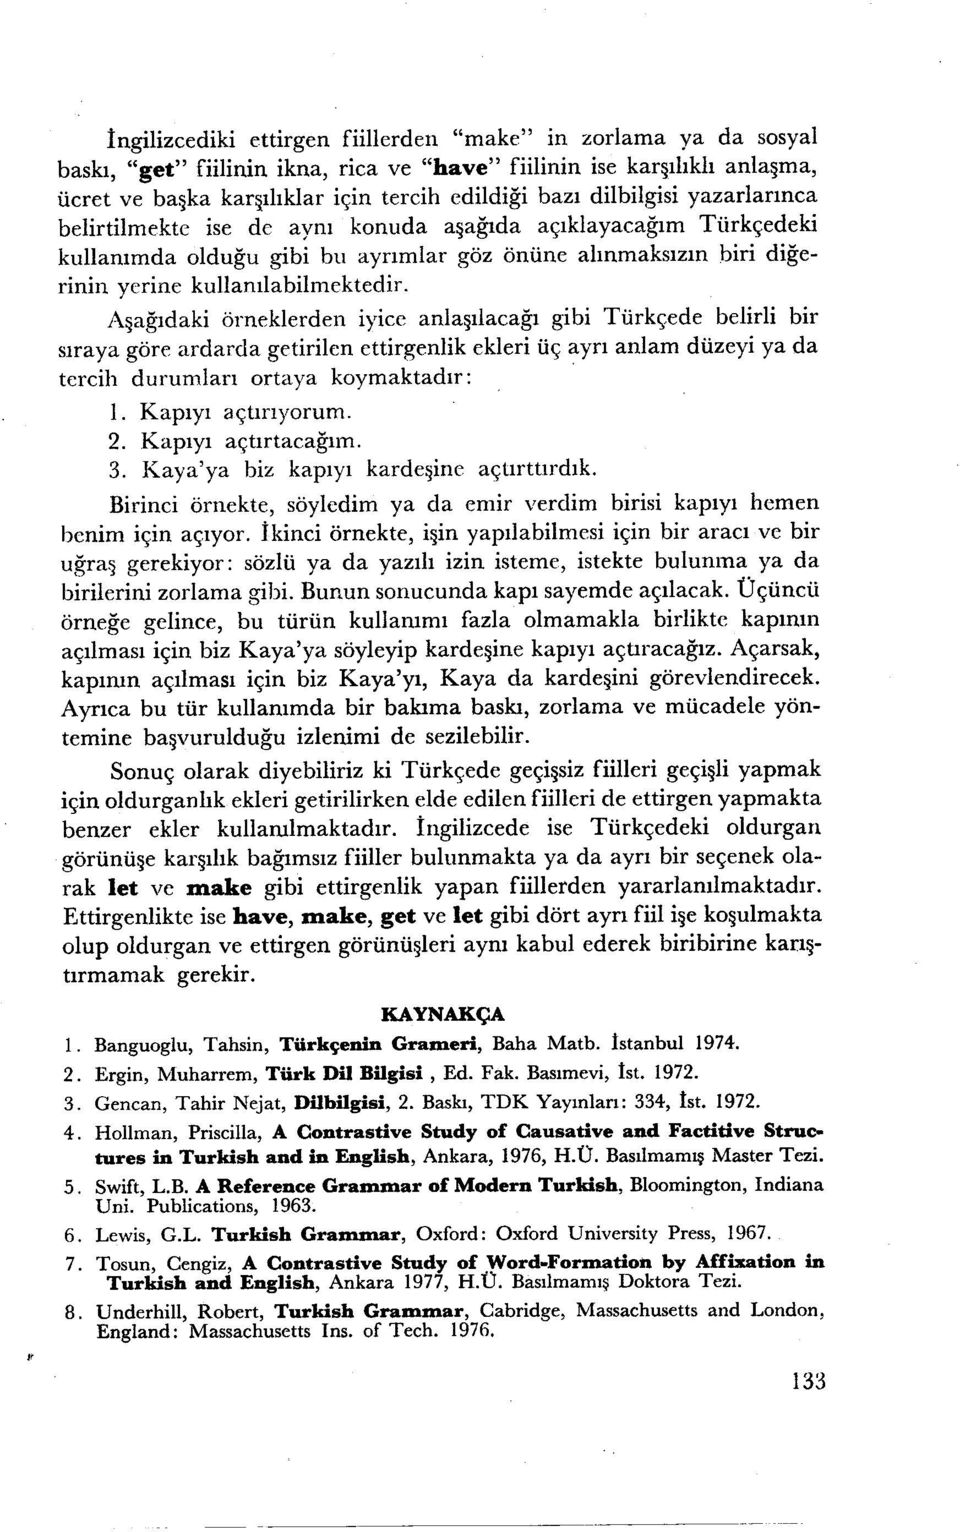 Aşağıdaki örneklerden iyice anlaşılacağı gibi Türkçede belirli bir sıraya göre ardarda getirilen ettirgenlik ekleri üç ayrı anlam düzeyi ya da tercih durumları ortaya koymaktadır: ı 2 3 4 5 6 7 8 1